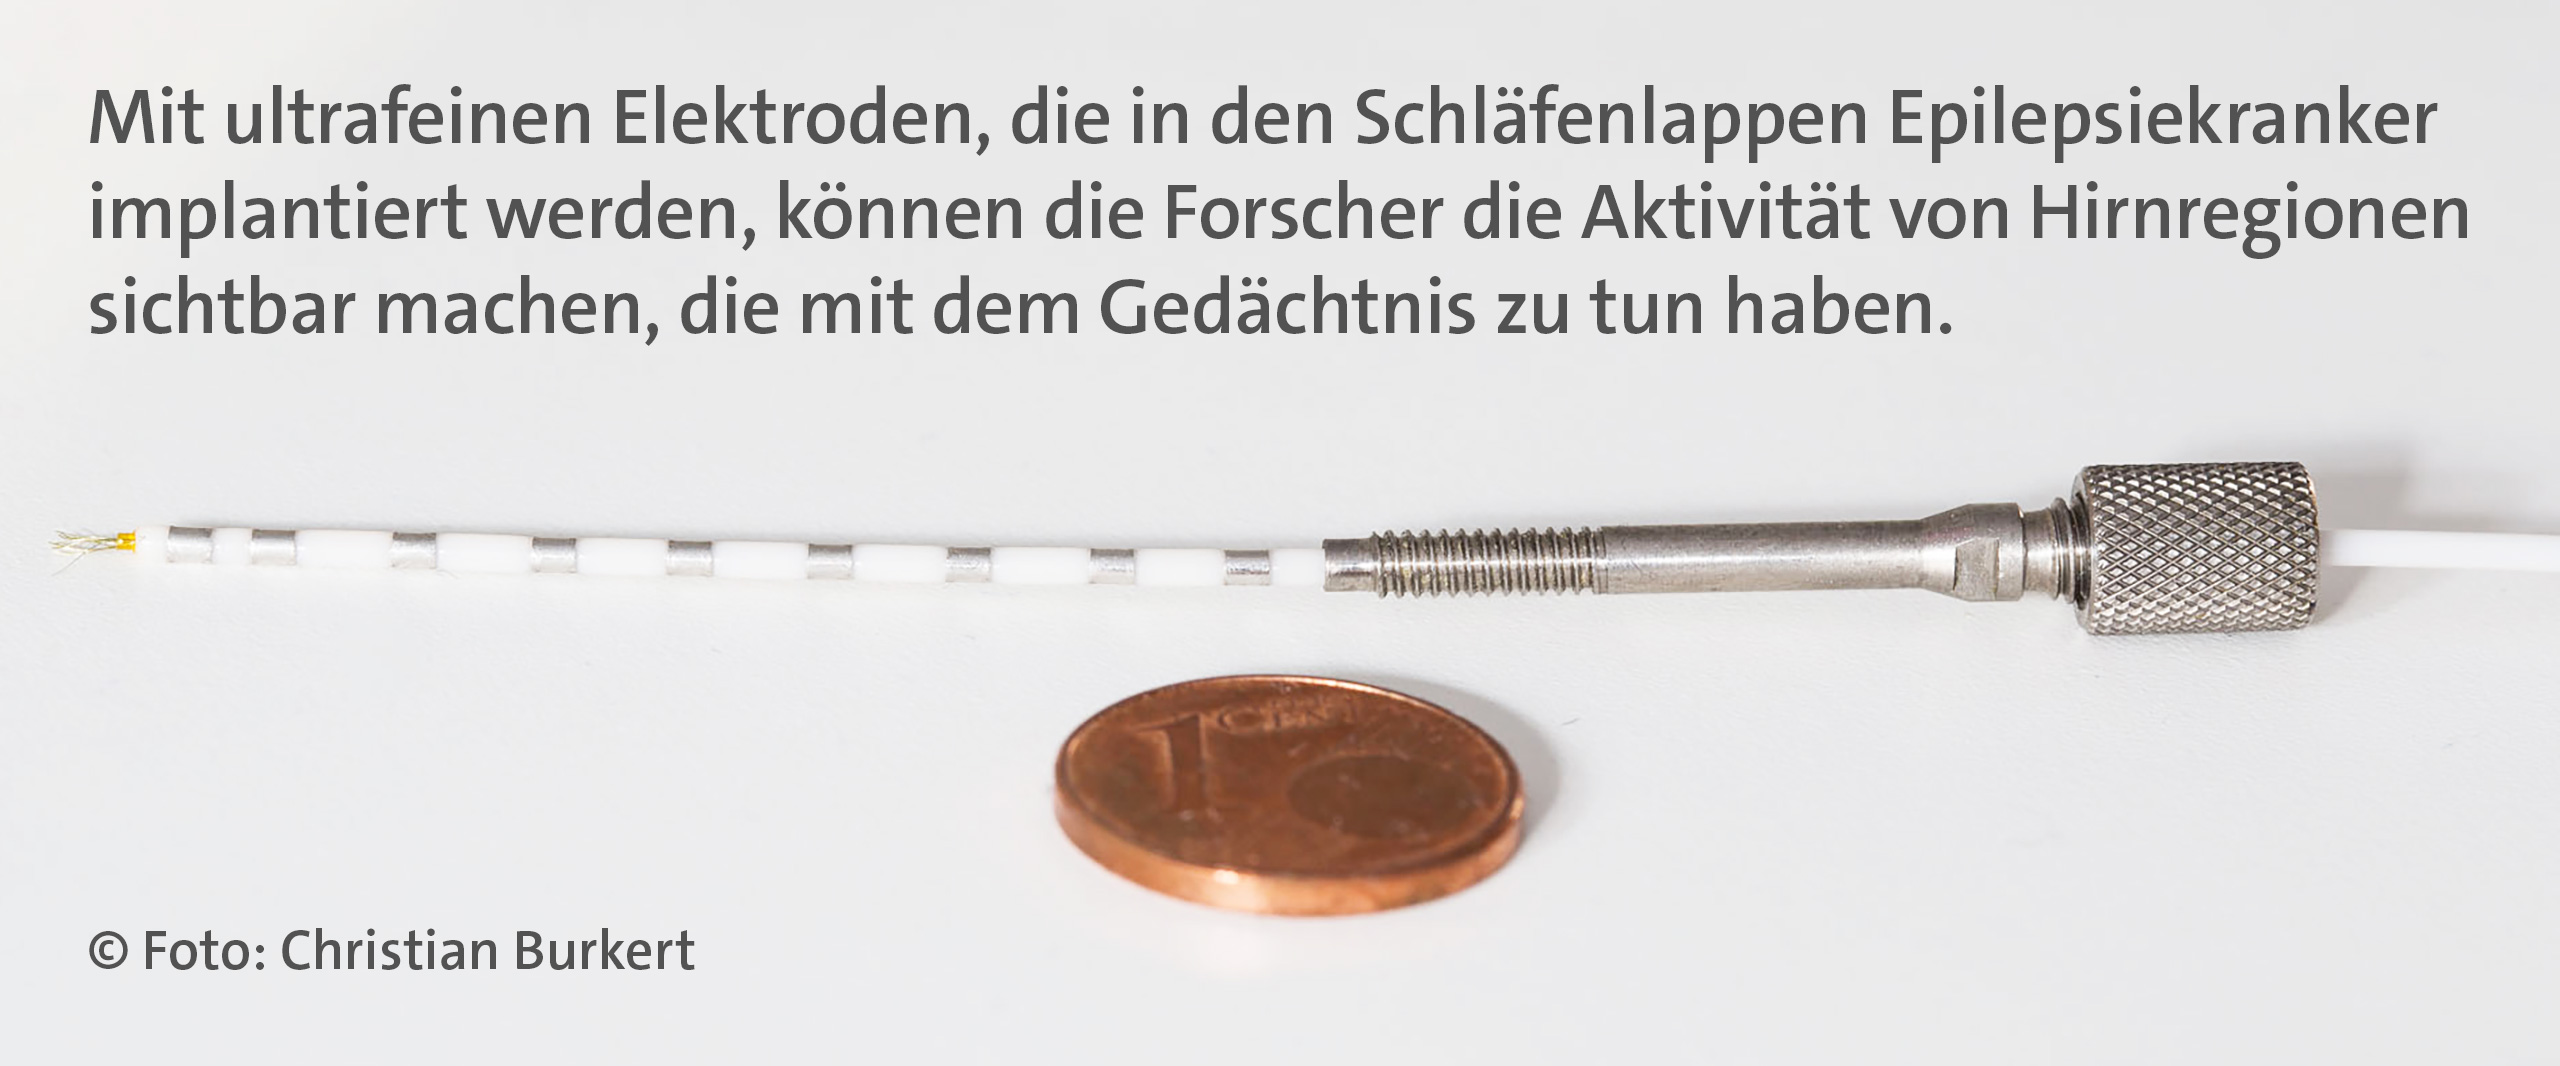 Grafik mit 1 Cent Stück neben einer Elektrode, die in den Schläfenlappen Epilepsiekranker implantiert werden kann